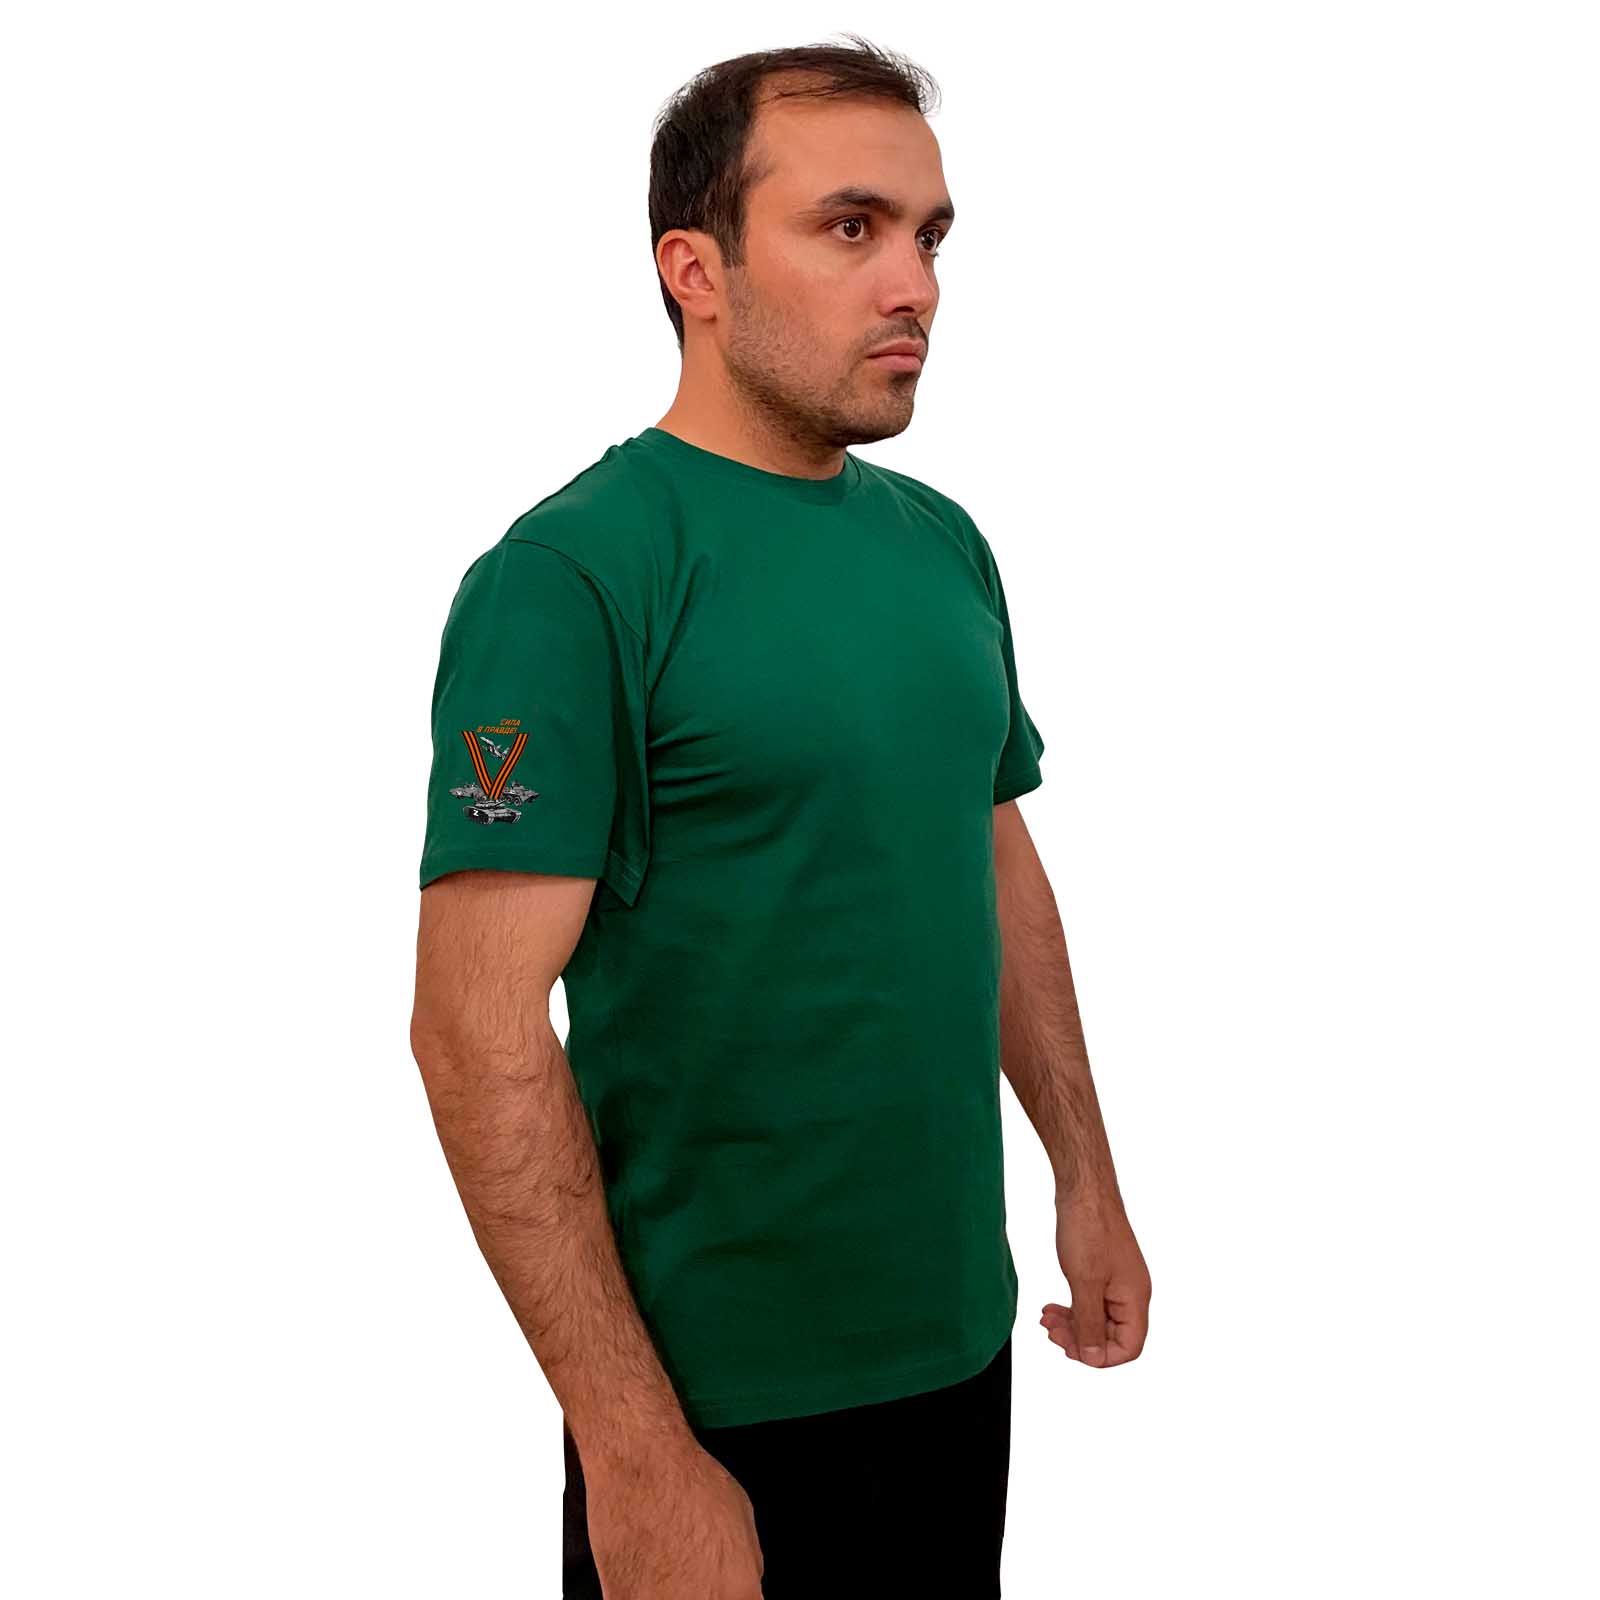 Зелёная футболка с трансфером V на рукаве